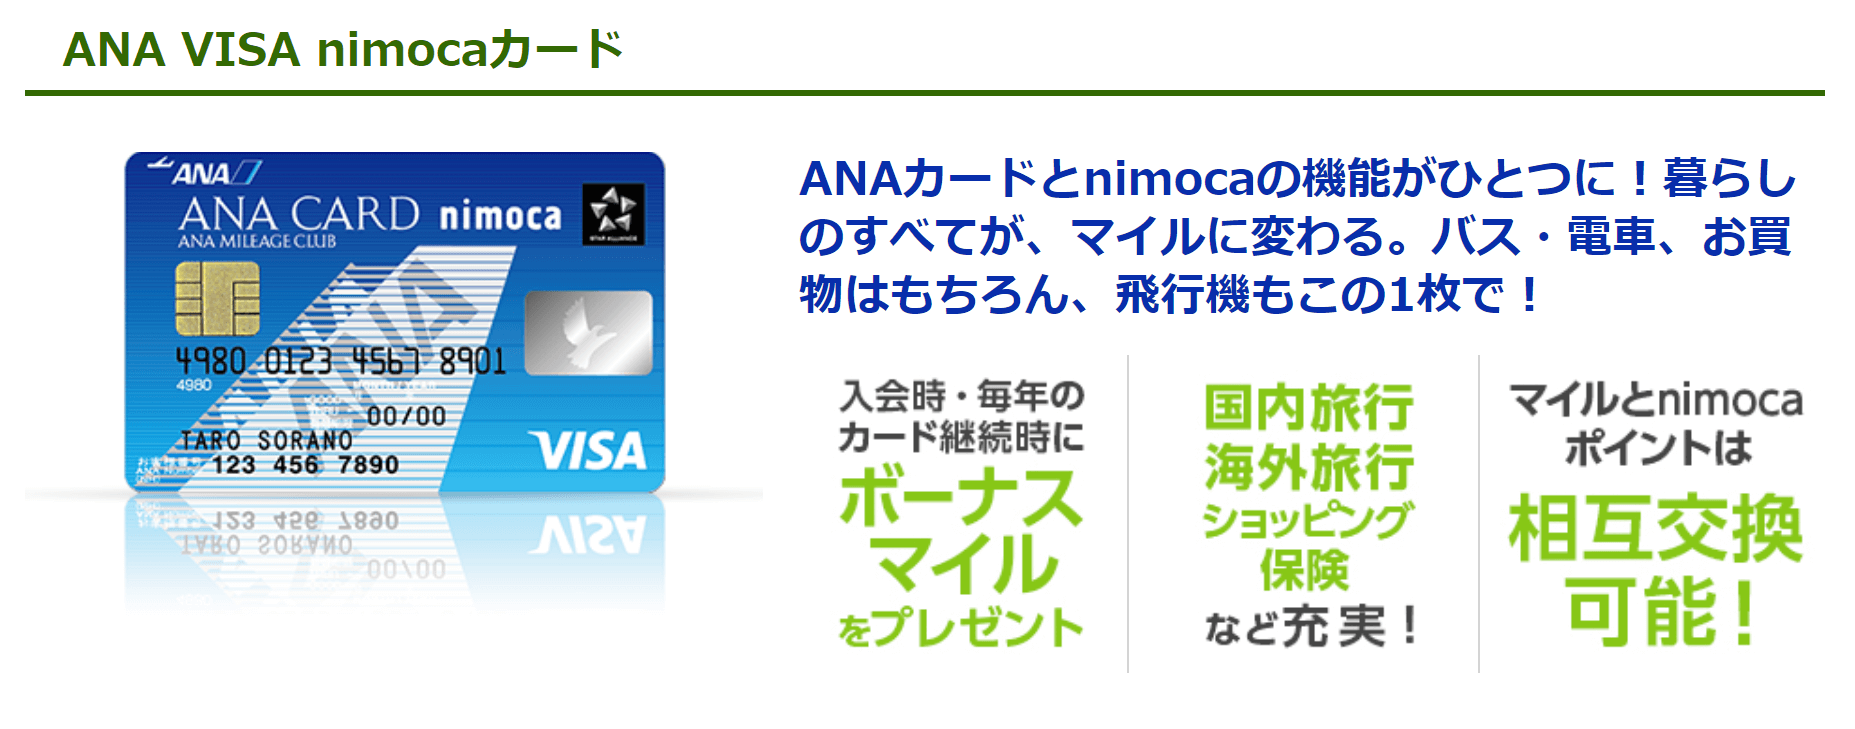 ANA VISA nimocaカードが誕生